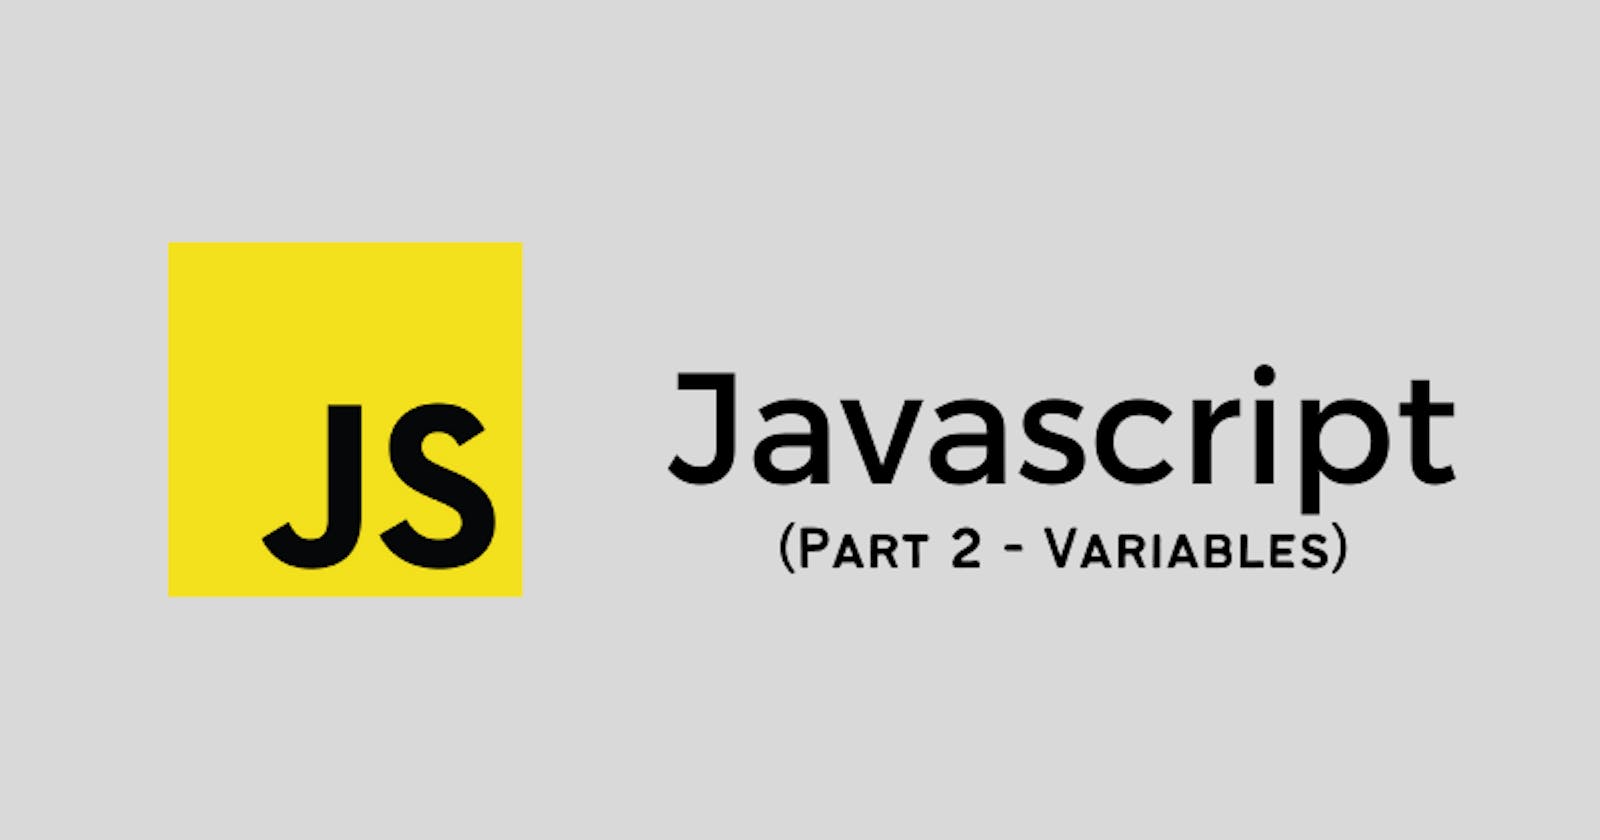 Javascript Variables